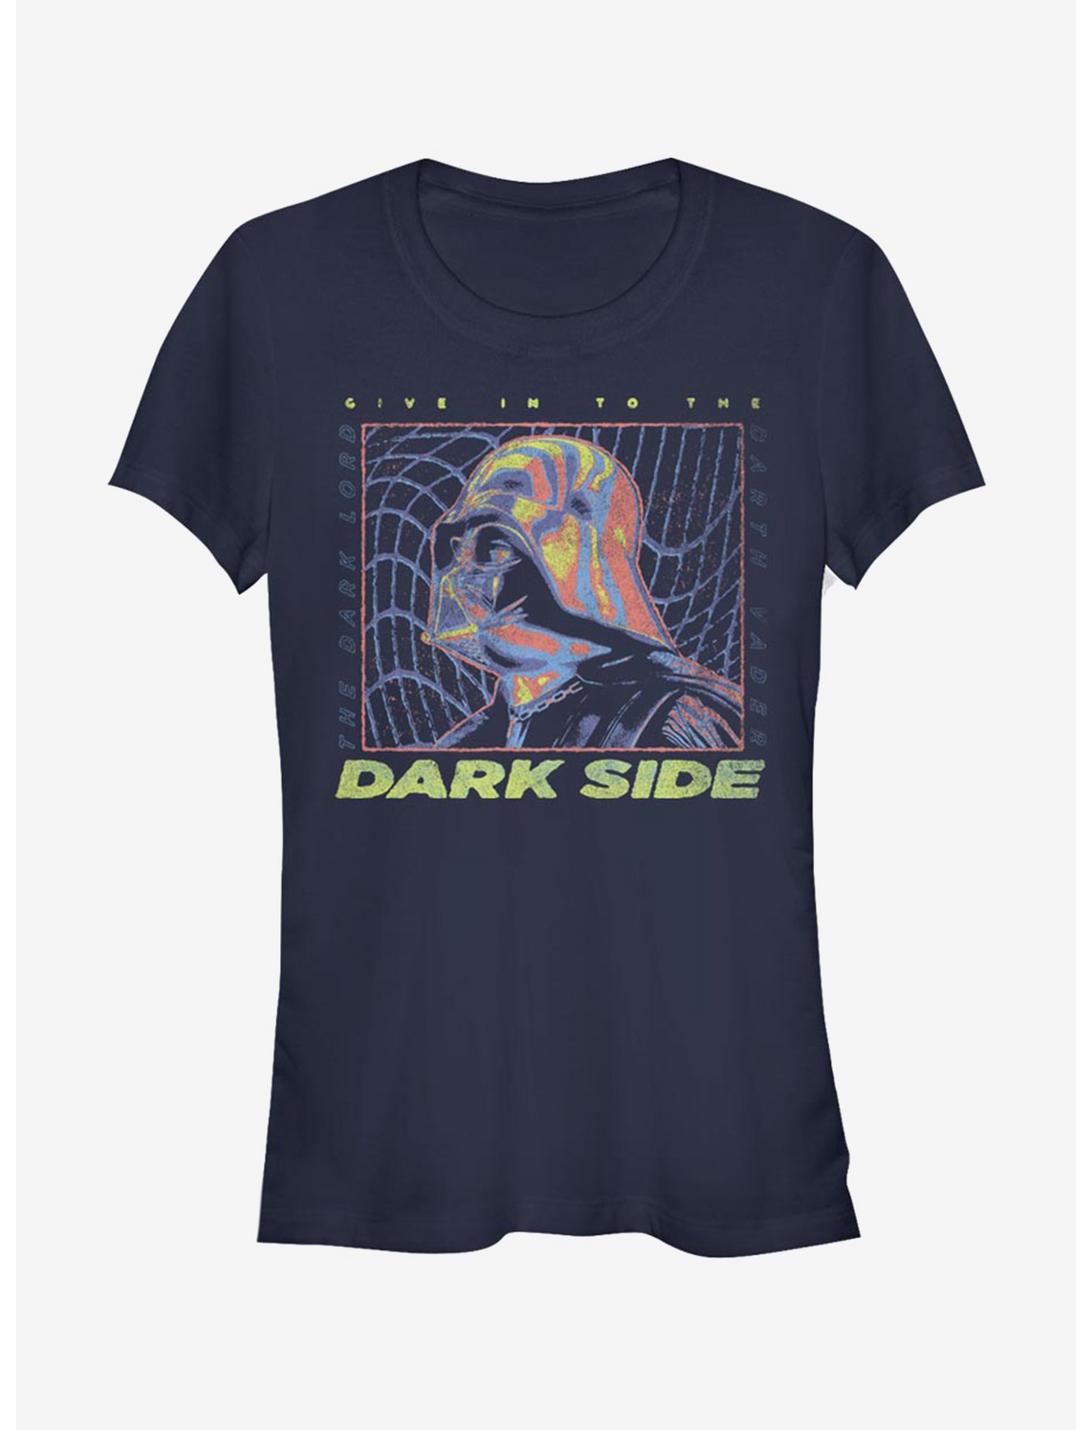 Star Wars Vader Thermal Warp Girls T-Shirt, NAVY, hi-res